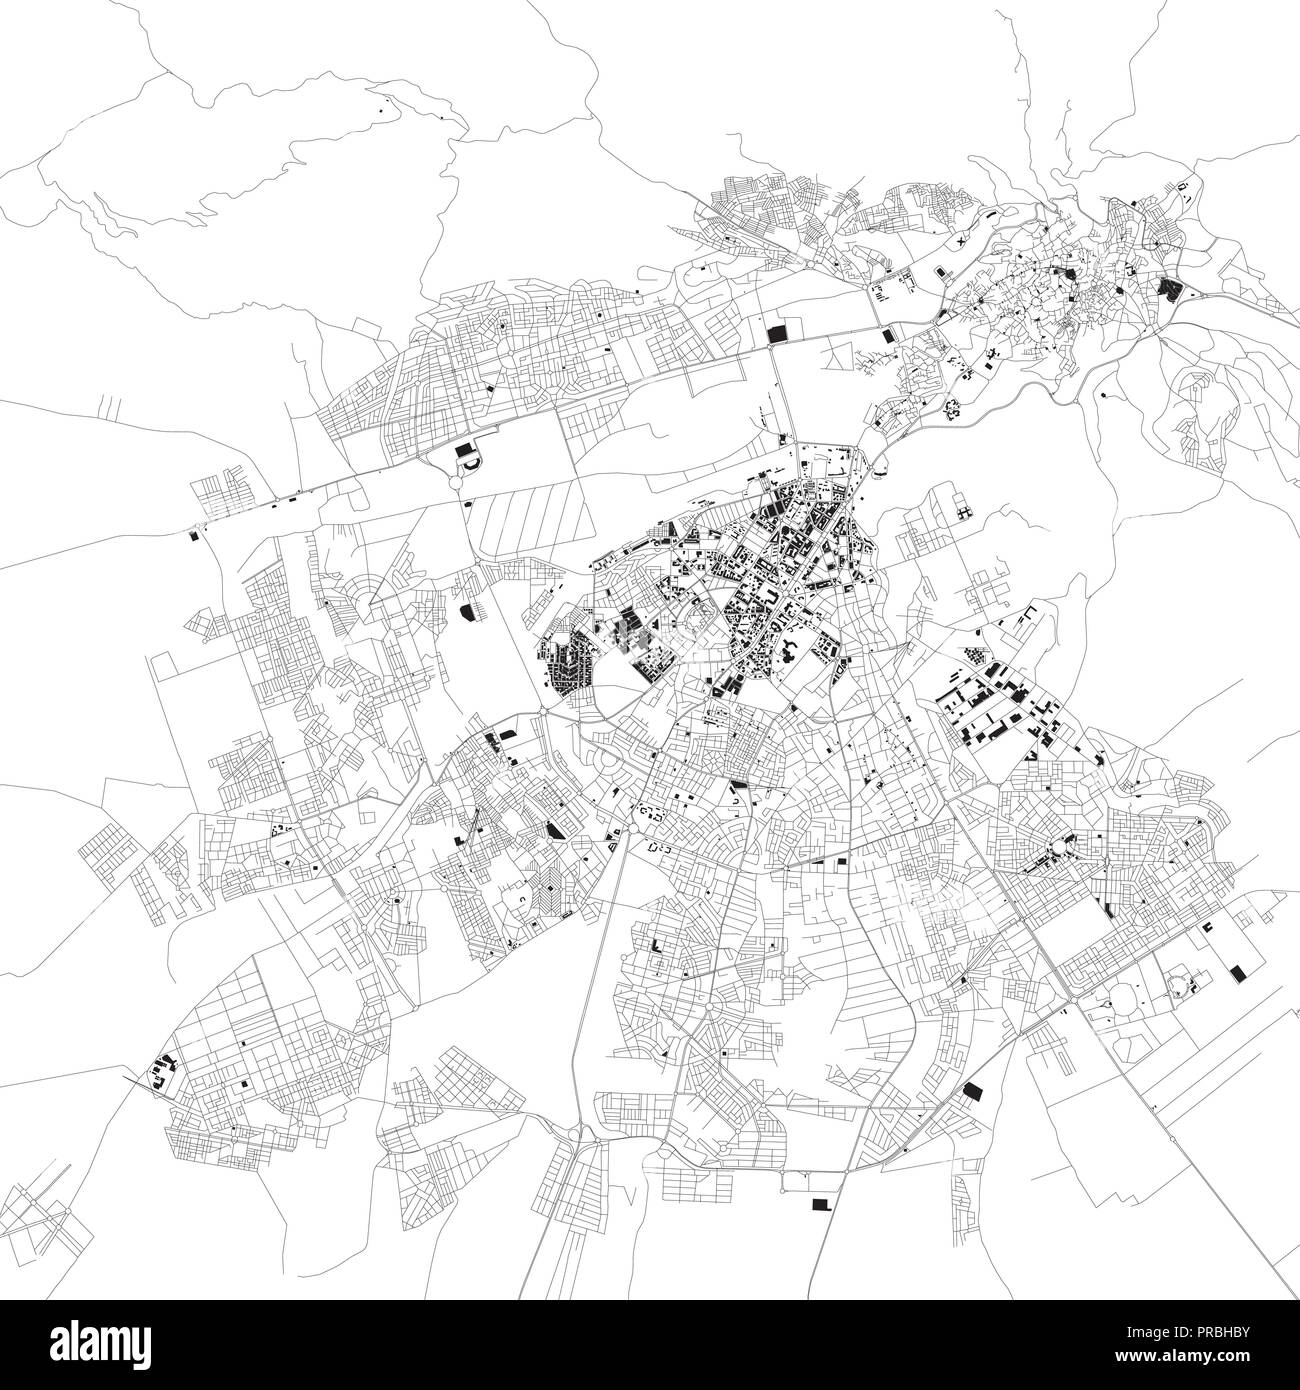 Plan de Fès, Maroc, la vue satellite, carte en noir et blanc. Annuaire de la rue et plan de la ville. Afrique du Sud Illustration de Vecteur